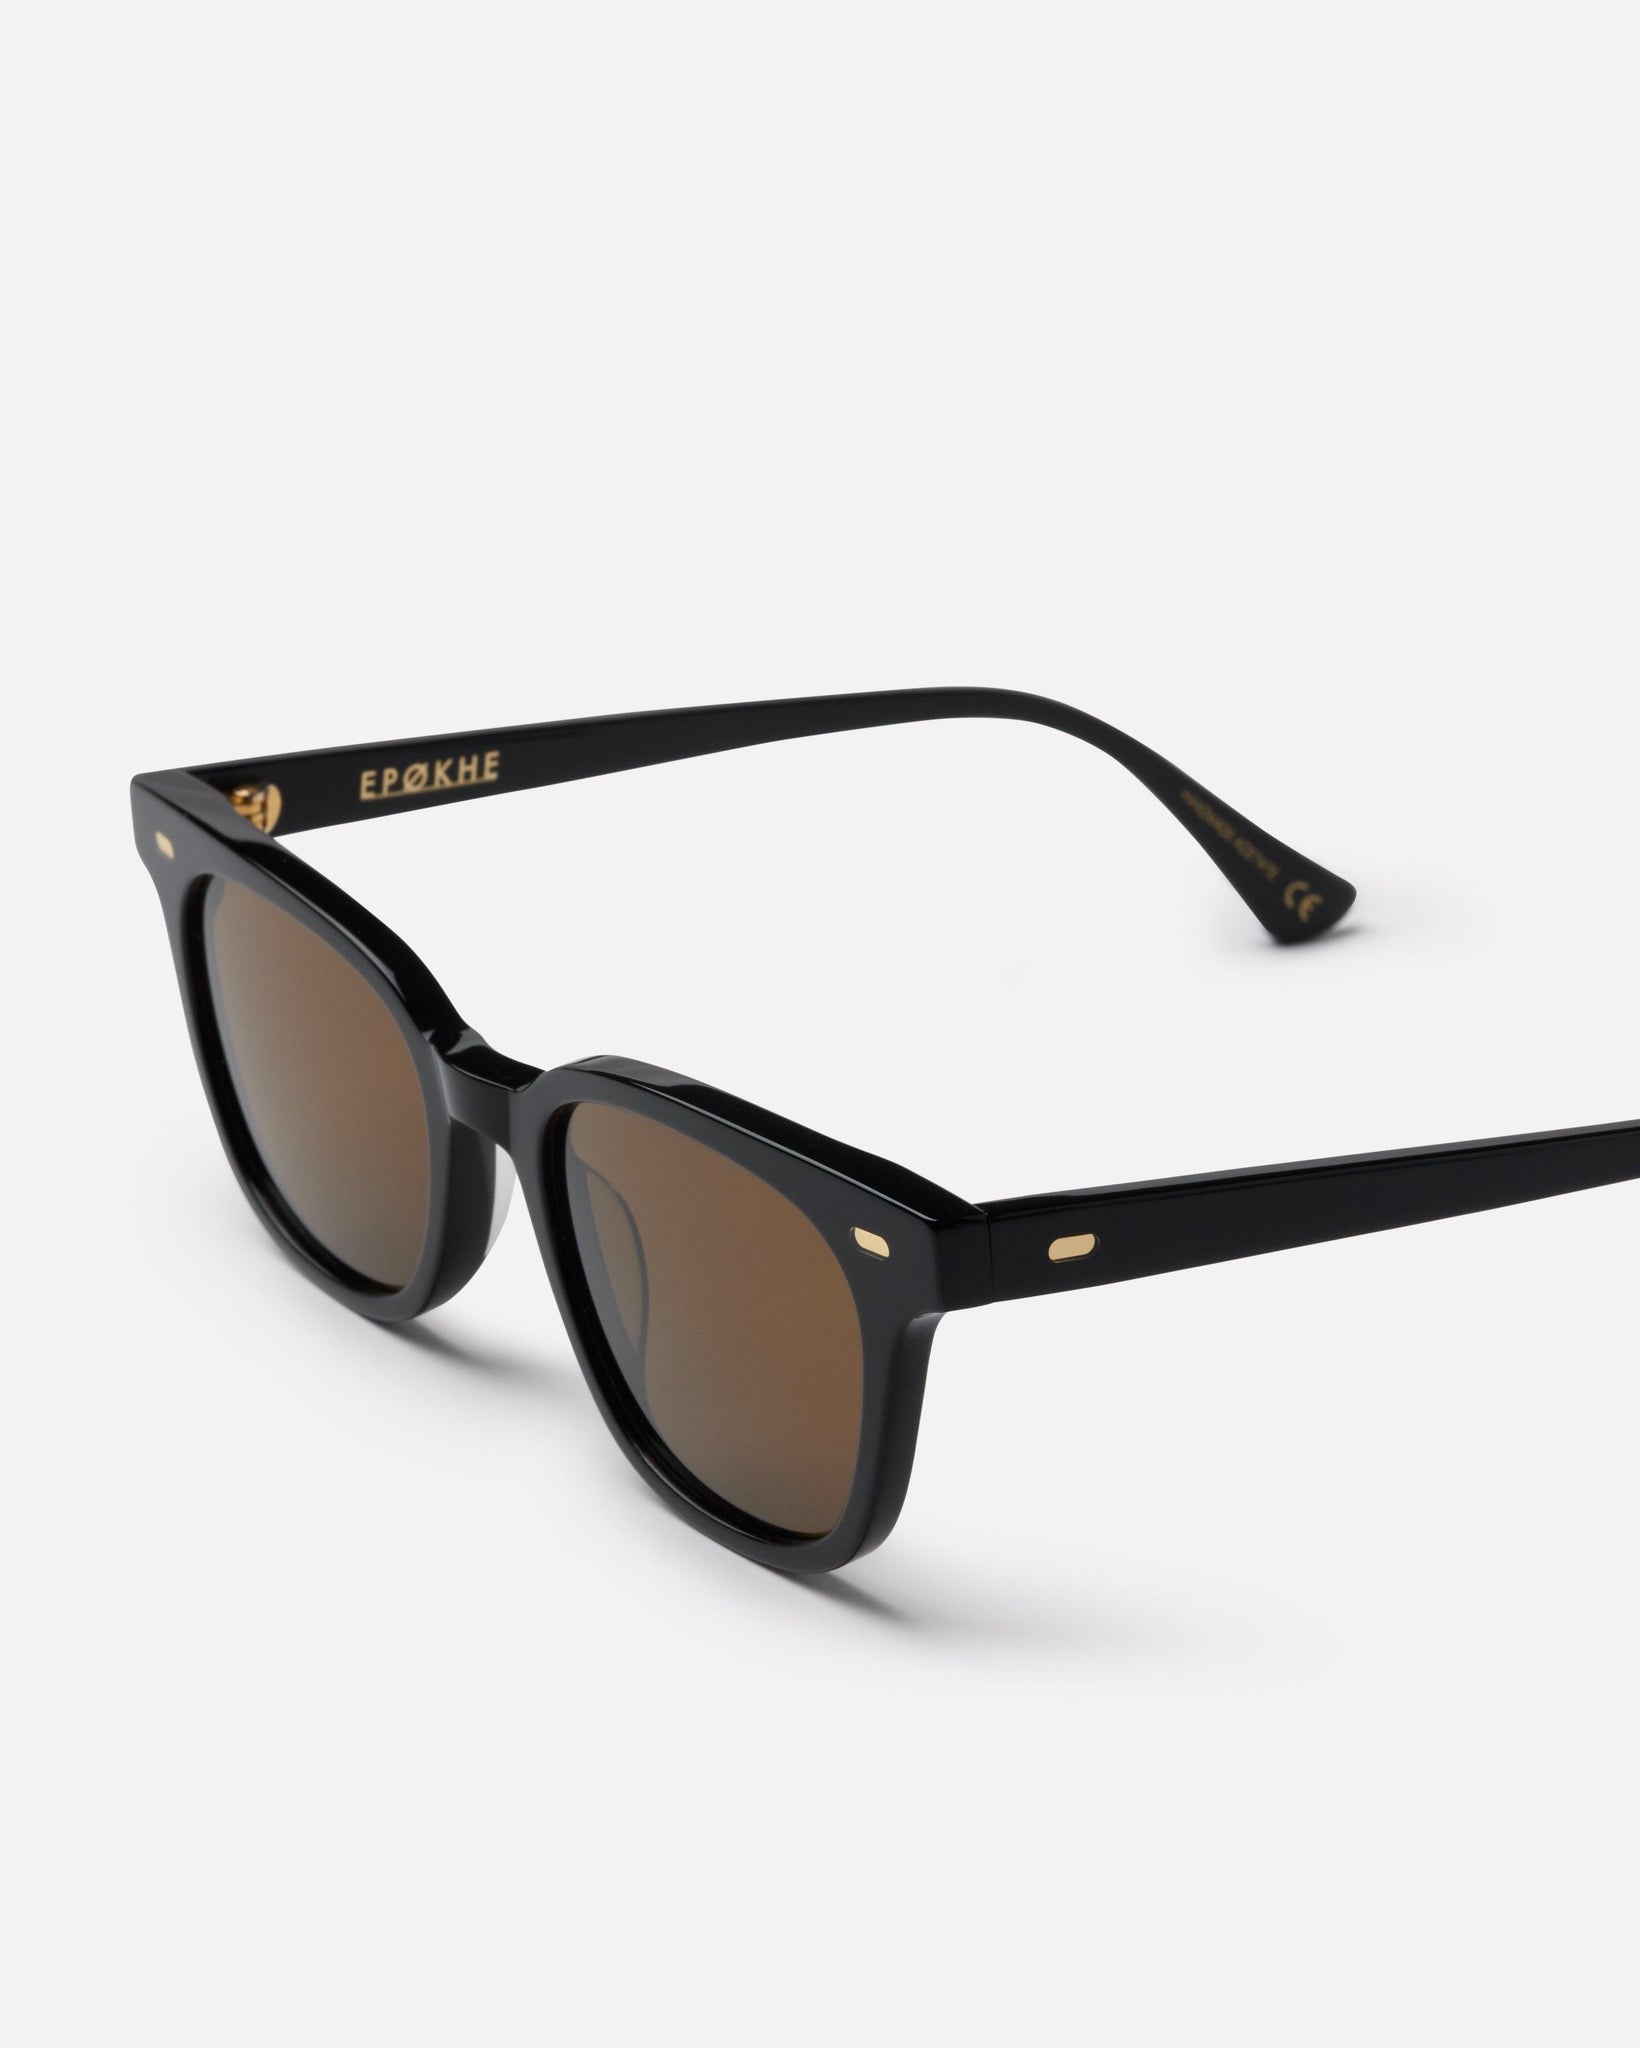 Kino - Black Polished / Bronze Polarized - Sunglasses - EPOKHE EYEWEAR